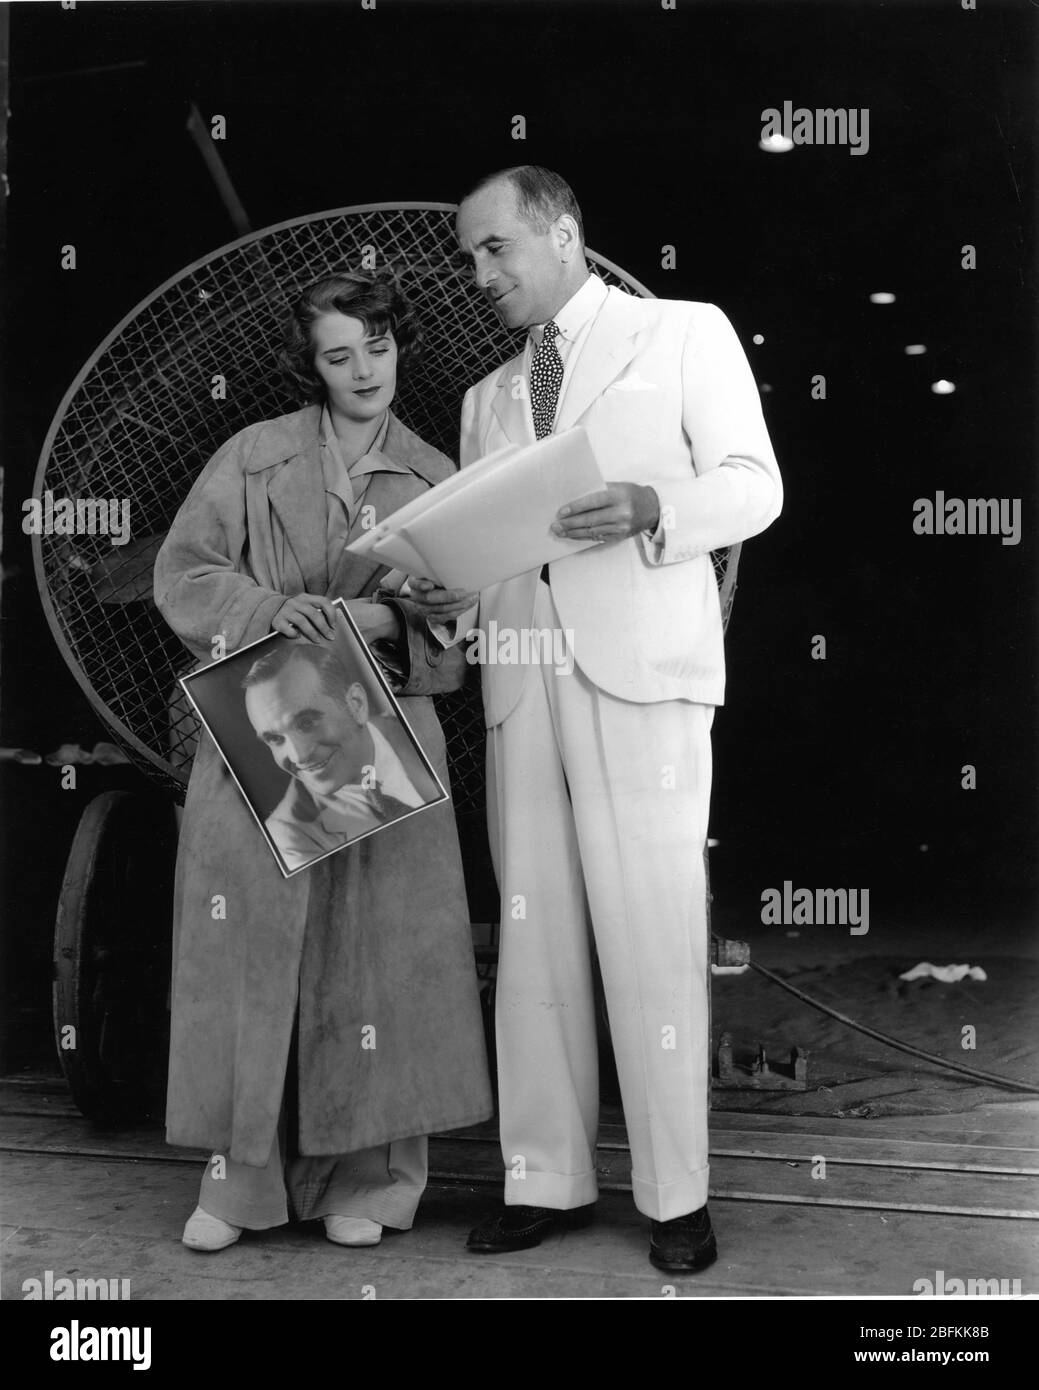 AL JOLSON zeigt seiner Frau RUBY KEELER Fotos von sich am Set Candid auf Warner Bros. Studio Lot Juni 1934 Warner Bros. Publicity Stockfoto